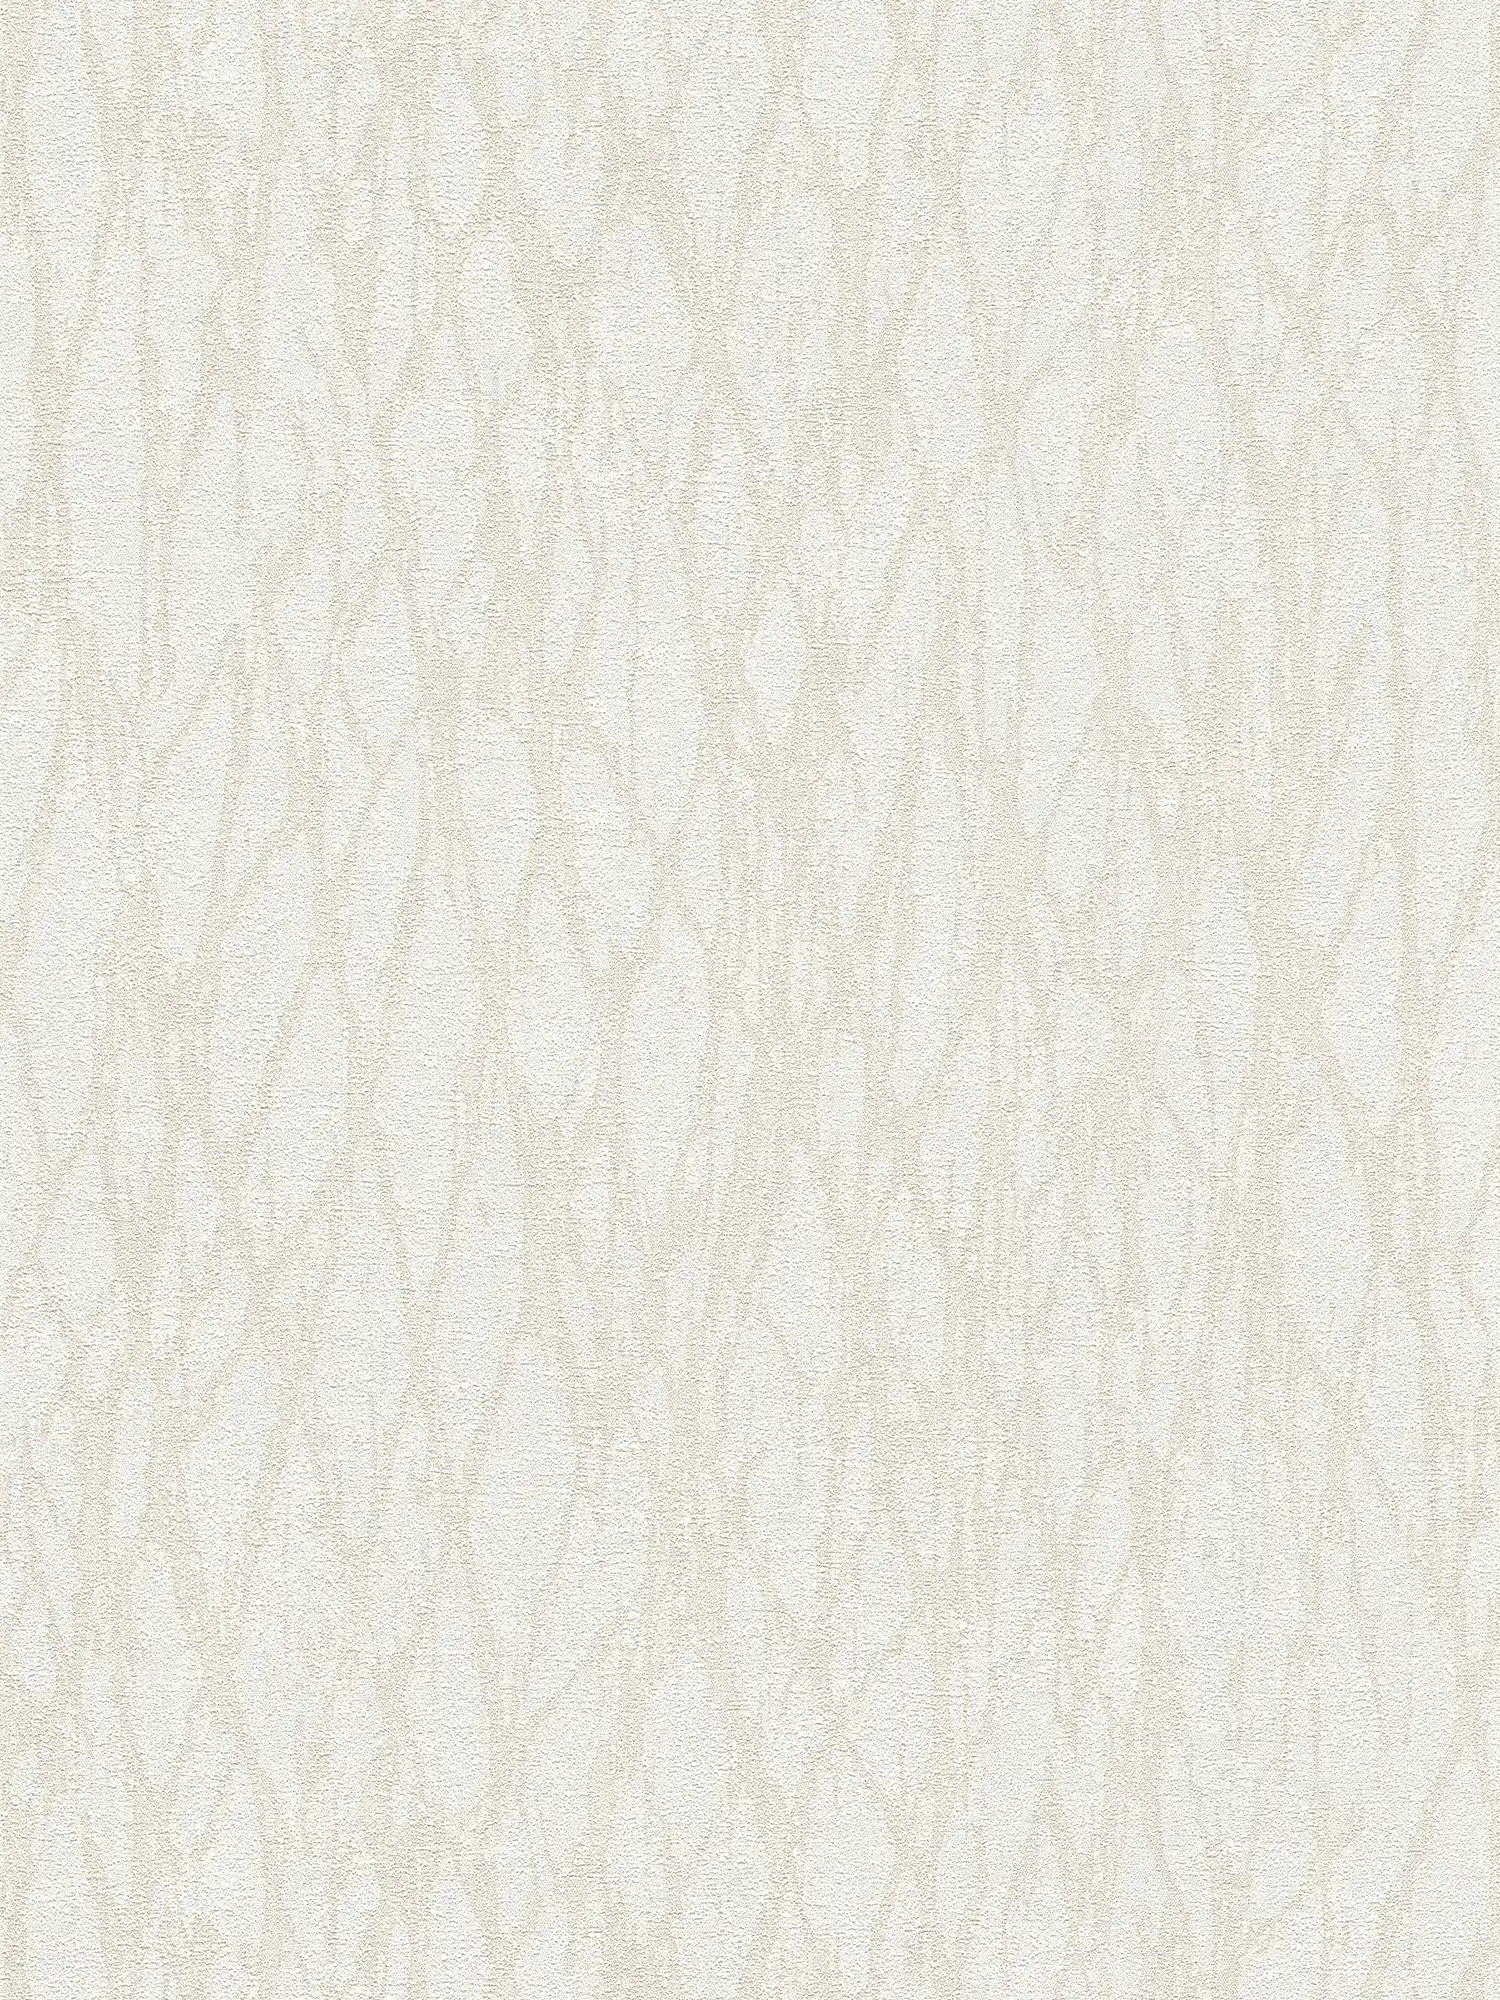 papier peint en papier intissé avec motifs de lignes abstraites - blanc, beige, crème
